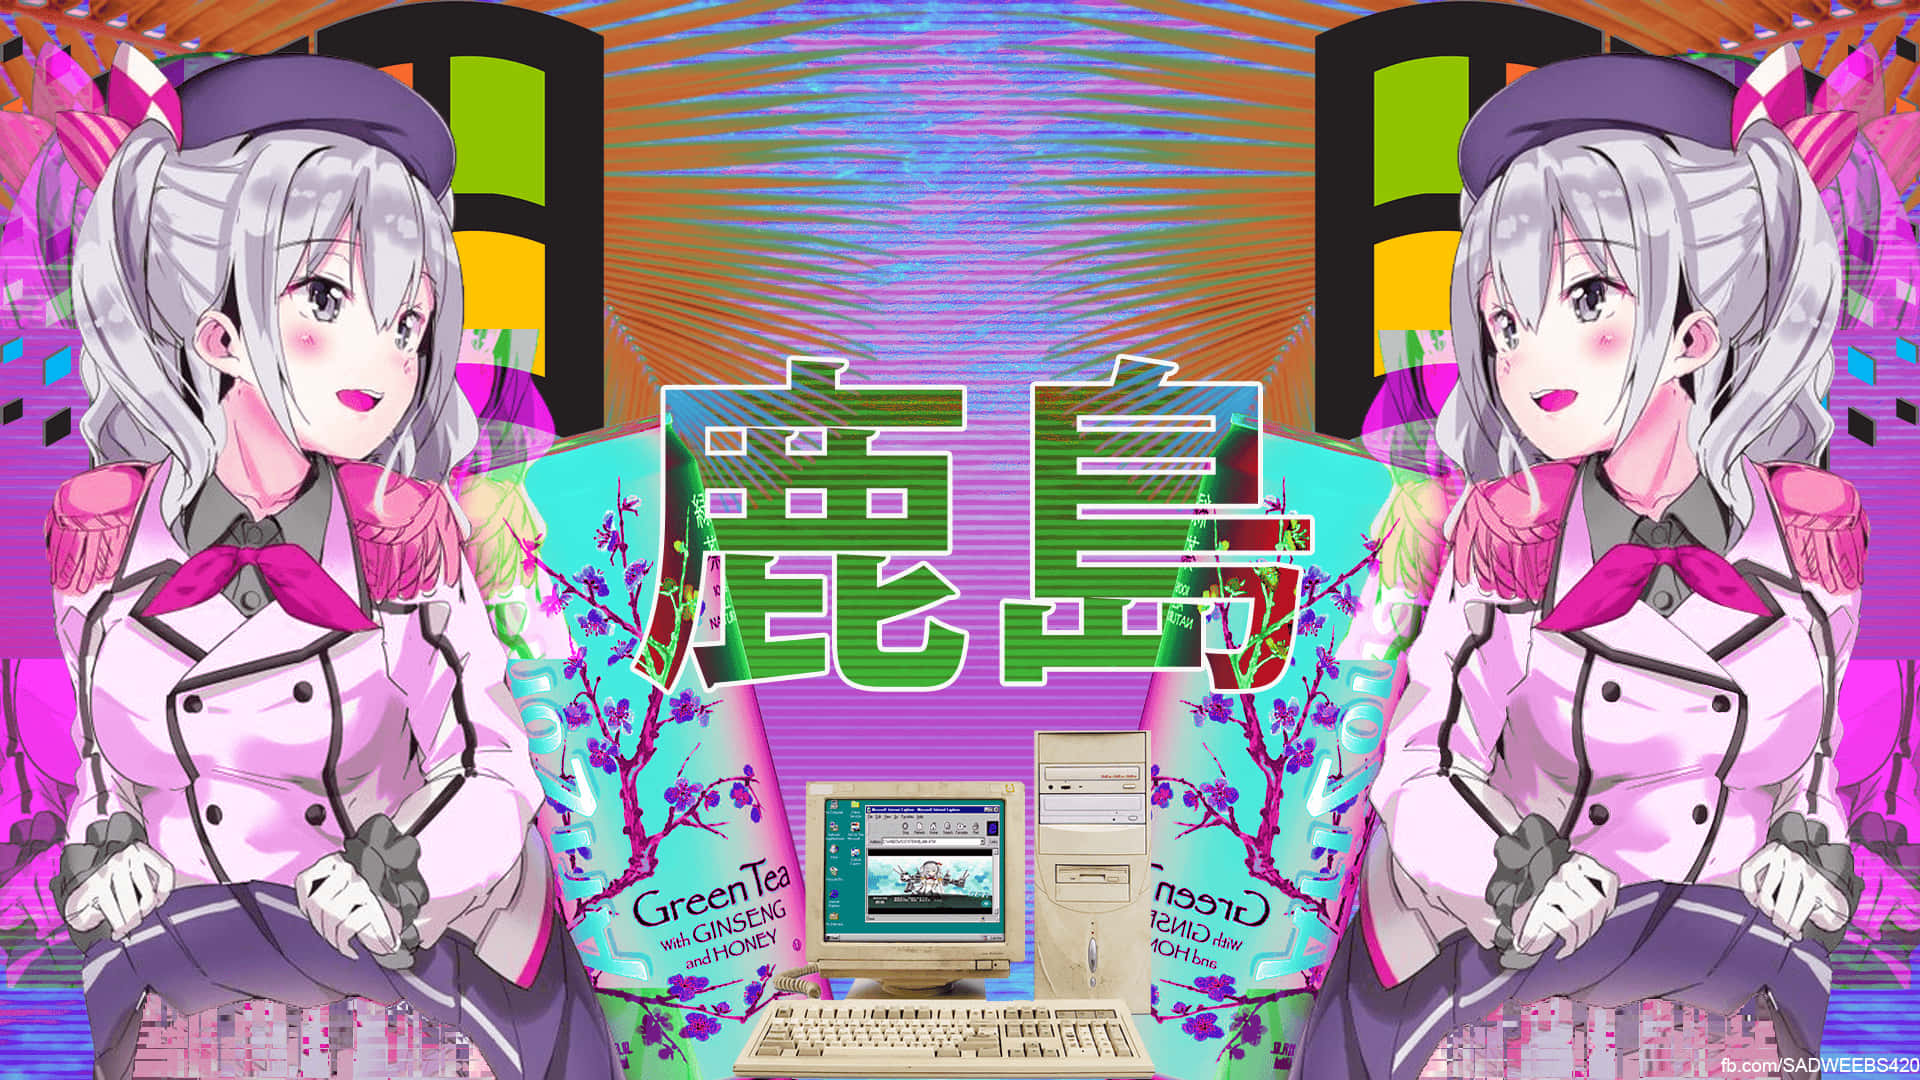 Illuminail Tuo Desktop Con Questa Immagine Di Anime Carino E Estetico. Sfondo